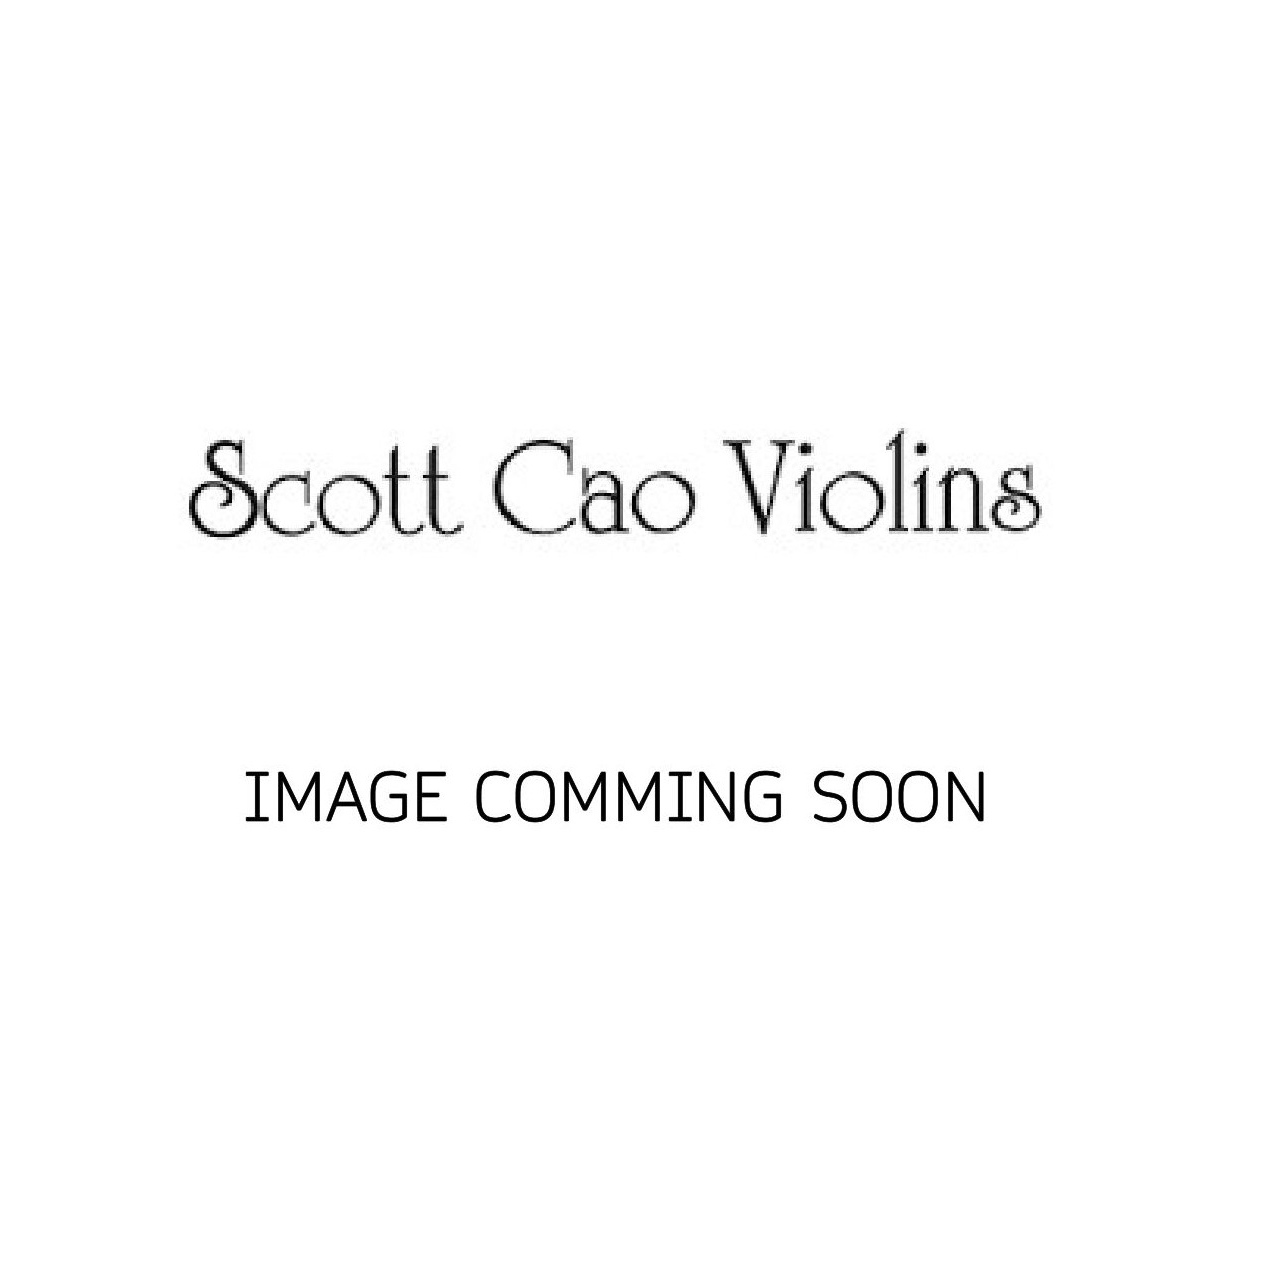 Scott Cao Viola 30,5 EU/EU